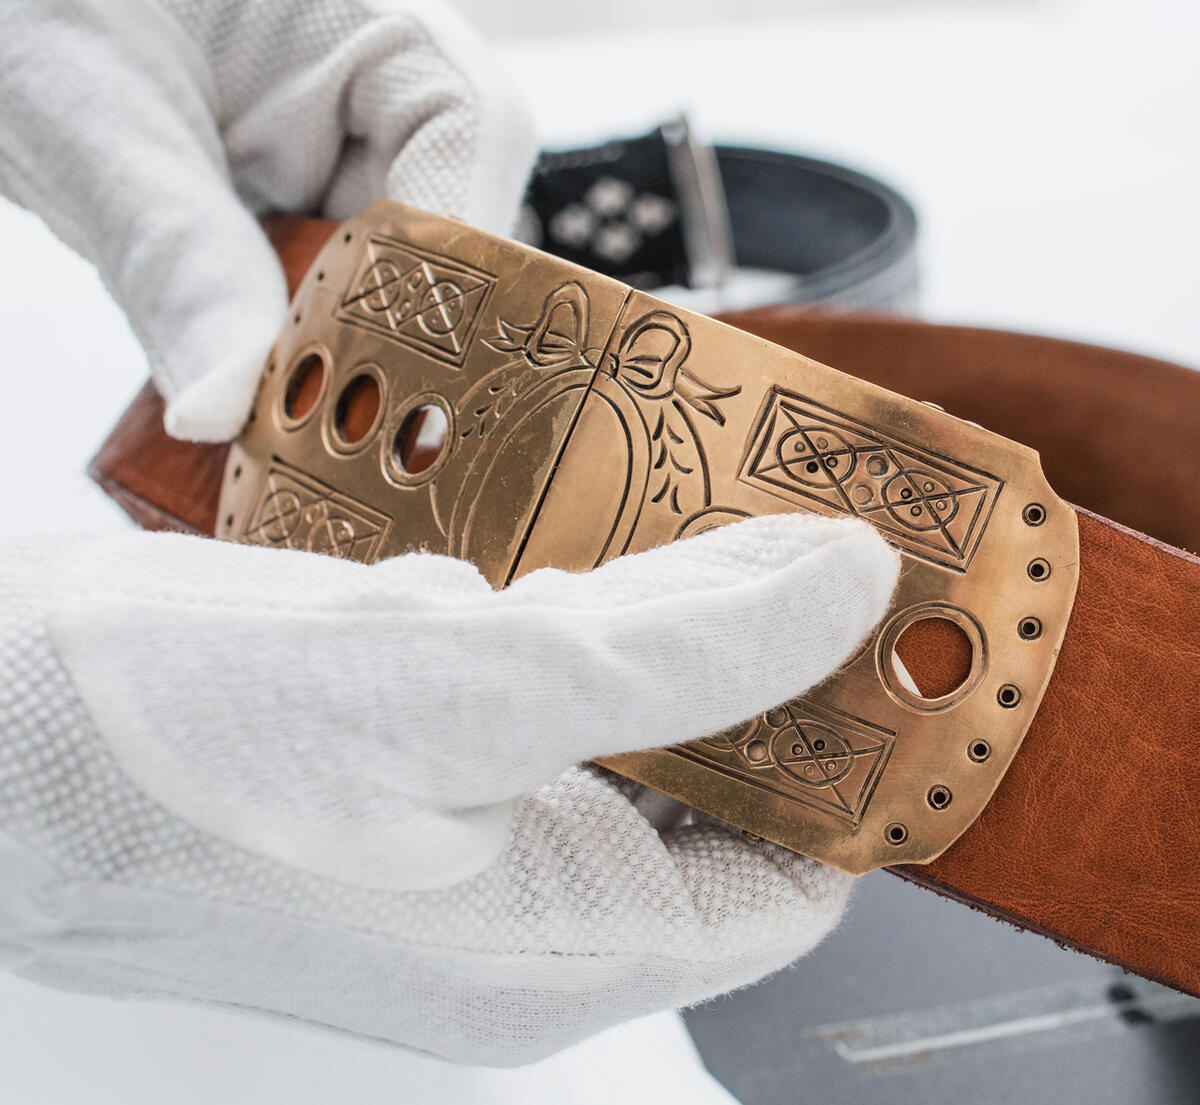 Zwei Hände mit weißen Handschuhen präsentieren die verzierte Bronzeschnalle eines mittelbraunen Ledergürtels.